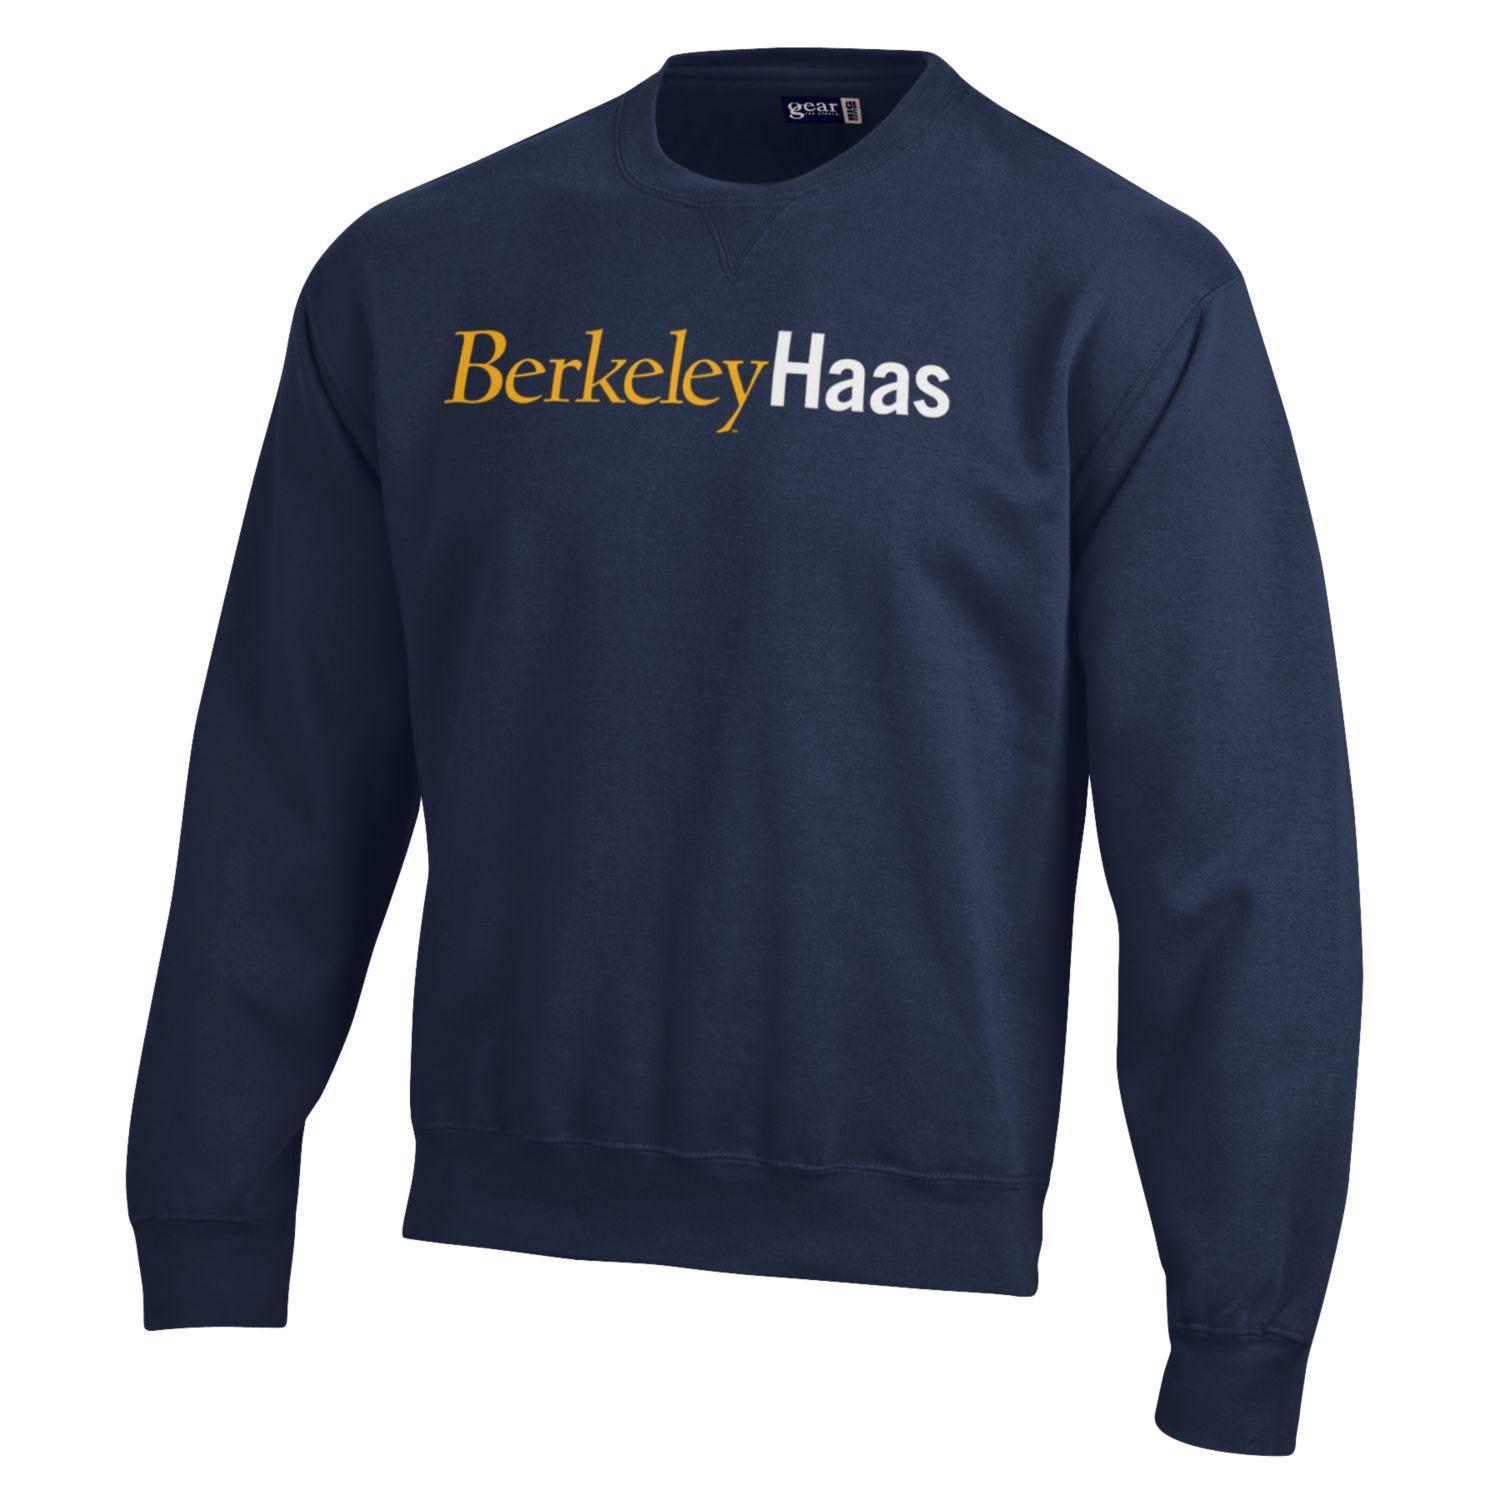 U.C. Berkeley rich cotton Berkeley Haas crew-neck sweatshirt-Navy-Shop College Wear